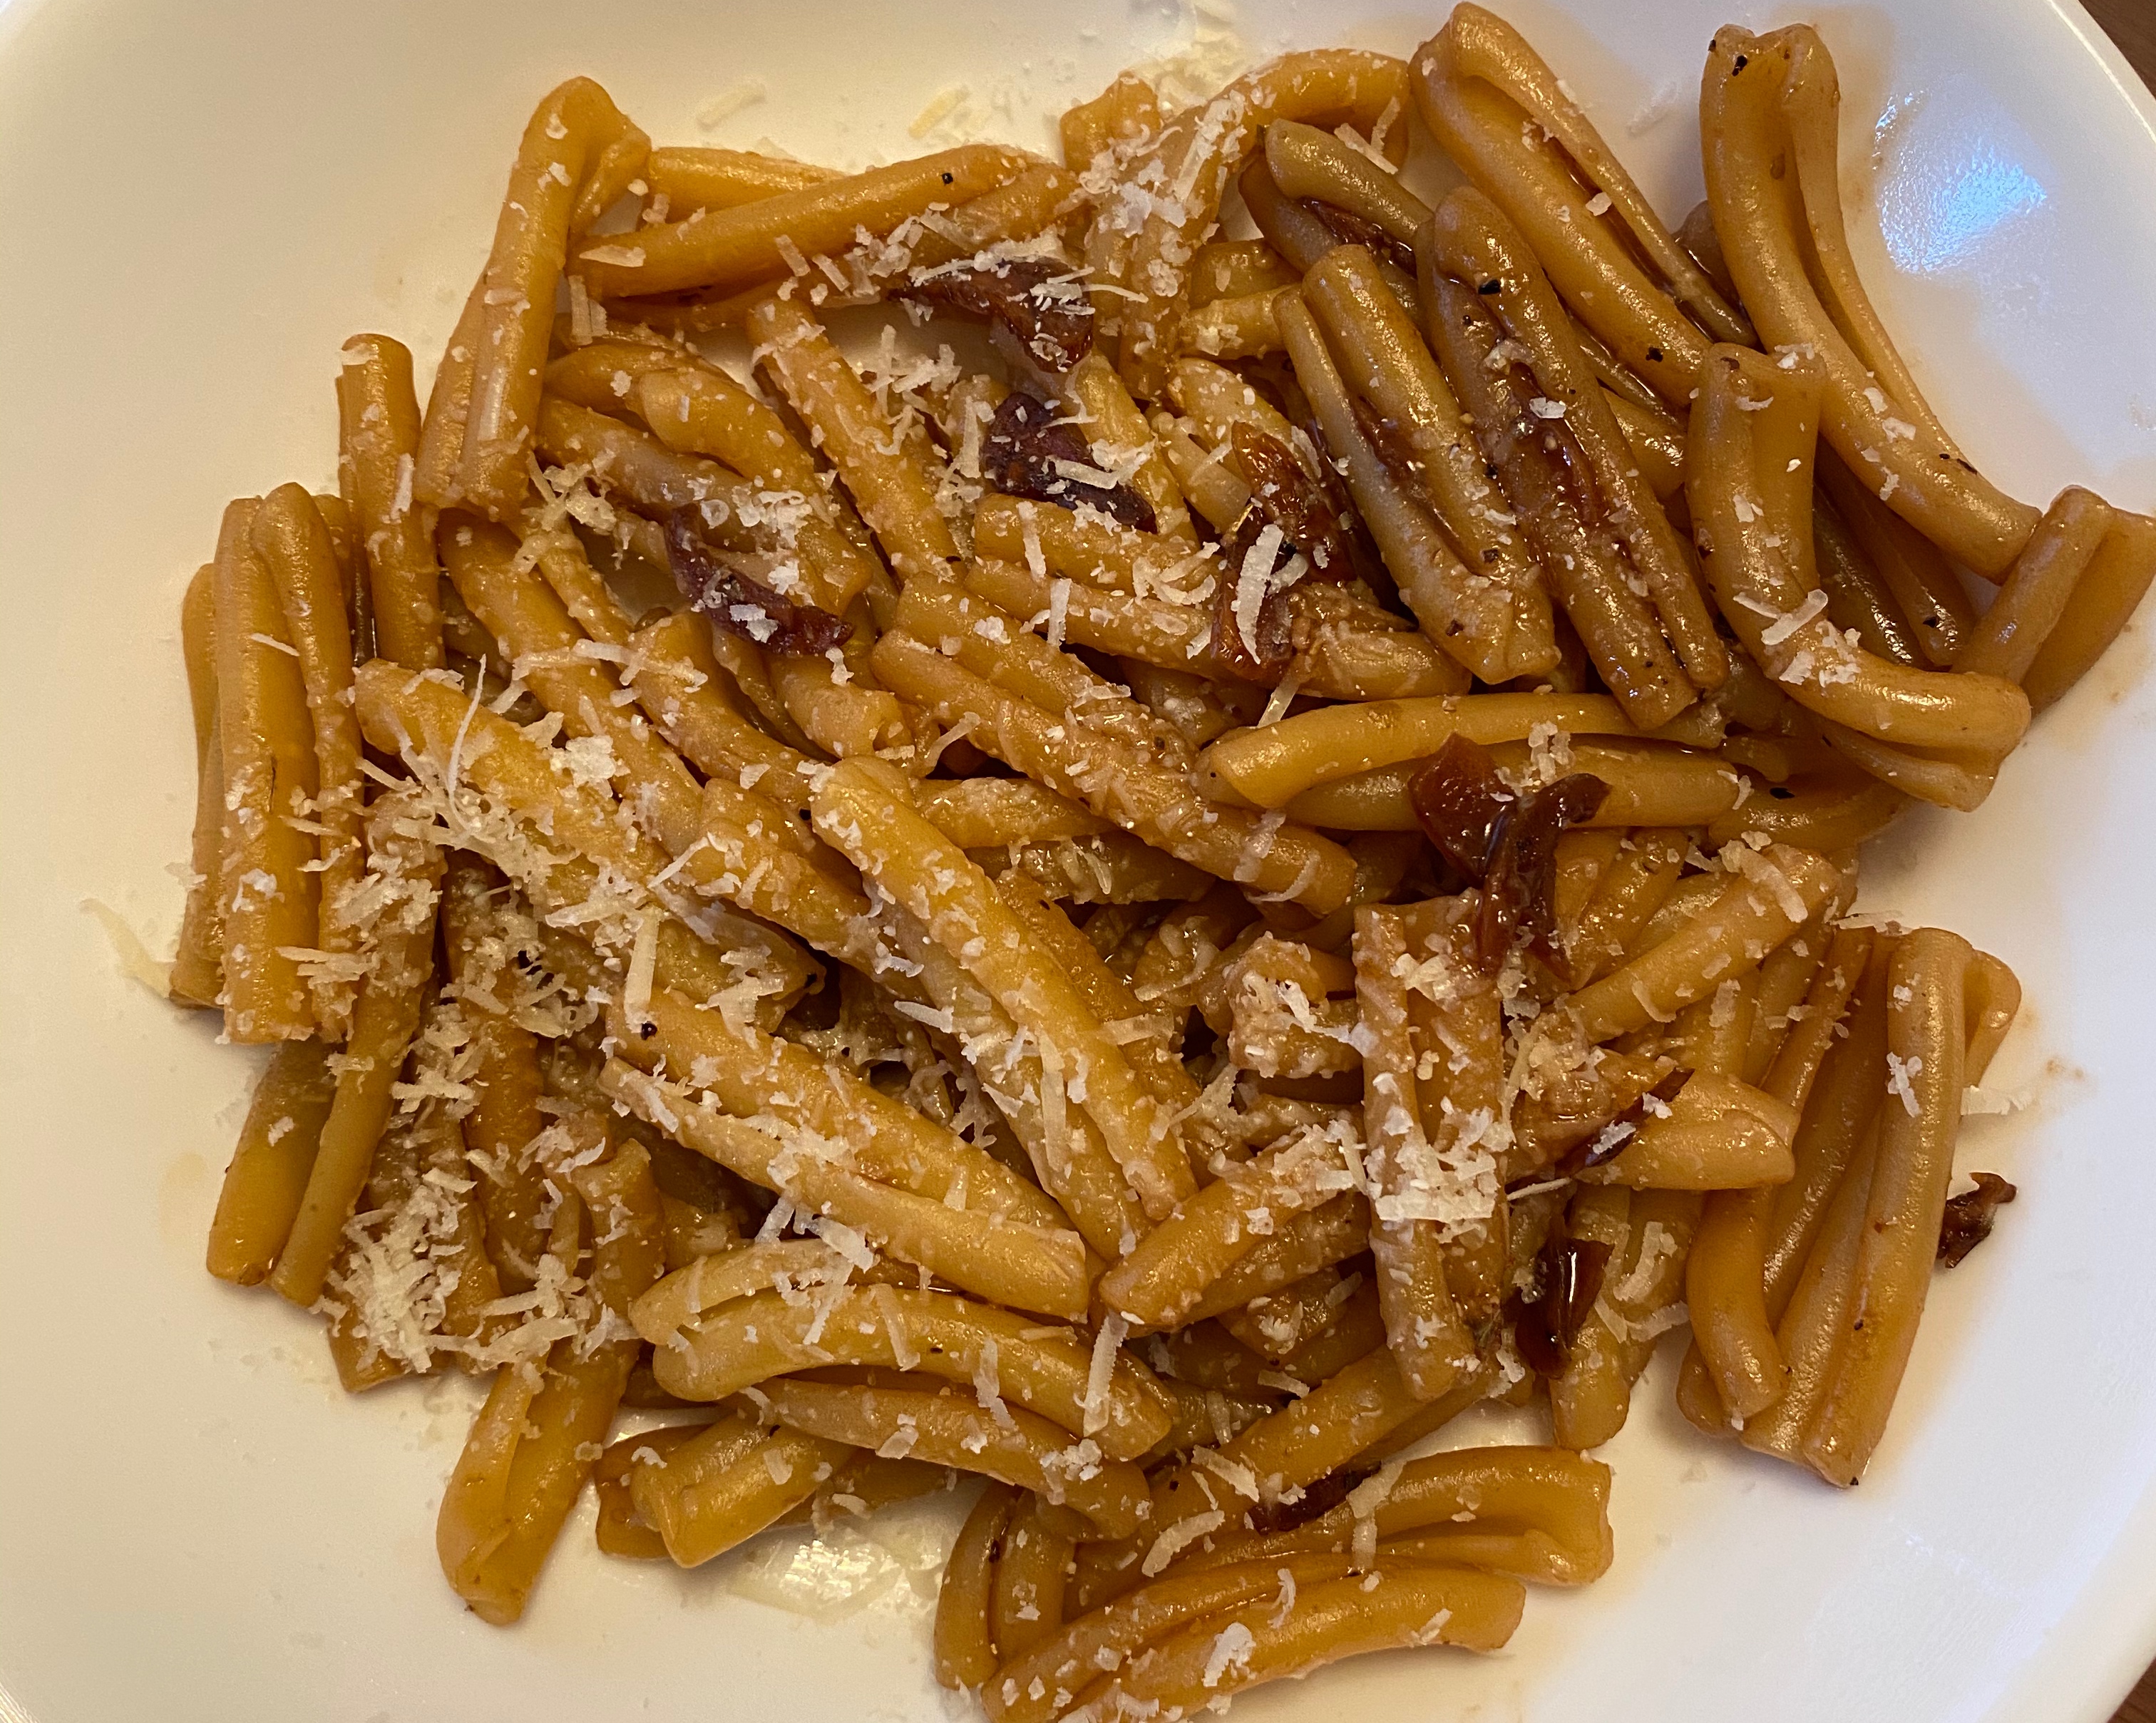 超级开胃的意大利香醋意面 balsamic vinegar pasta的做法